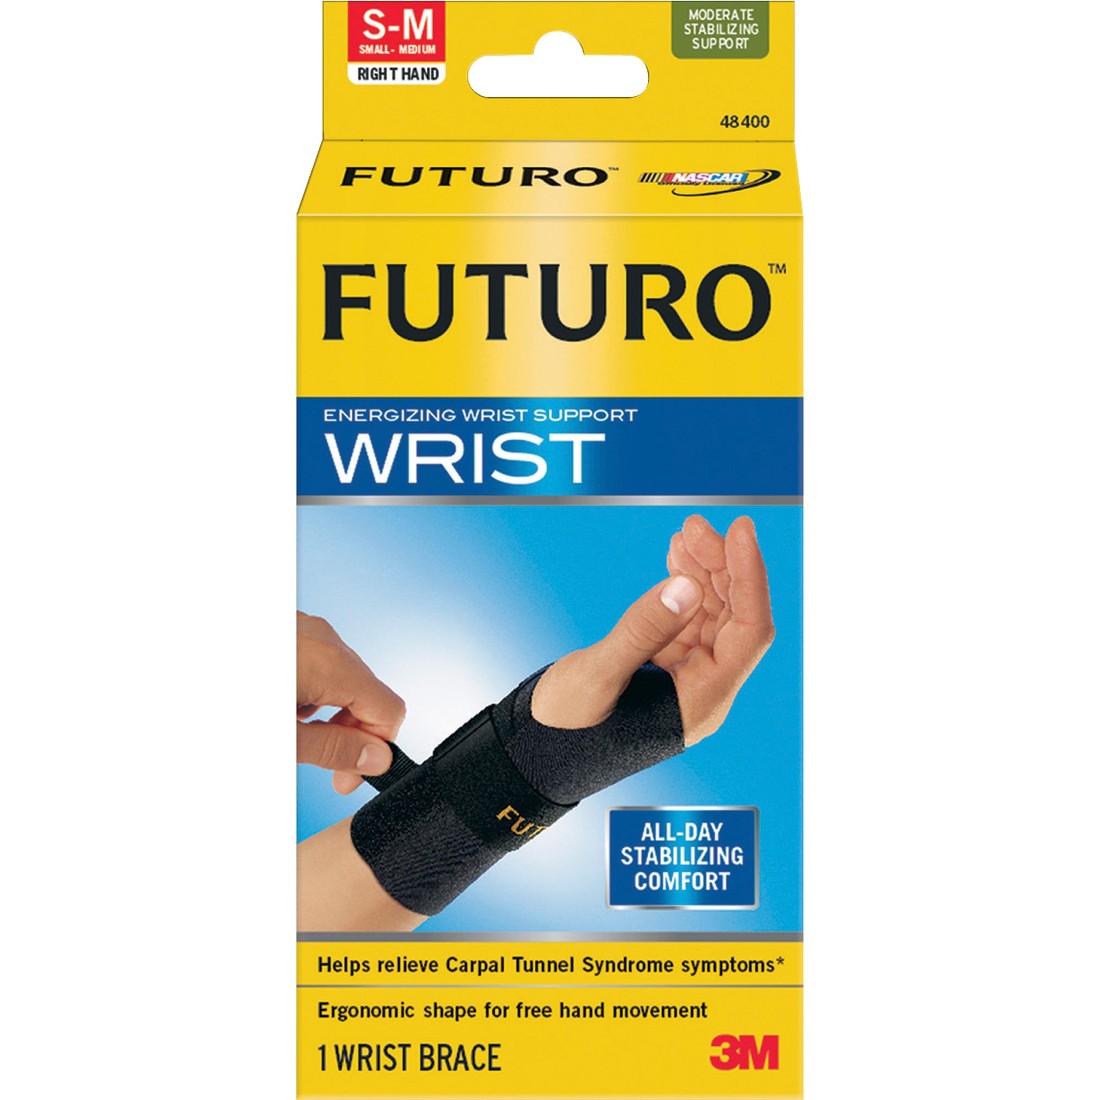 FUTURO Right Hand SmallMedium Wrist Support